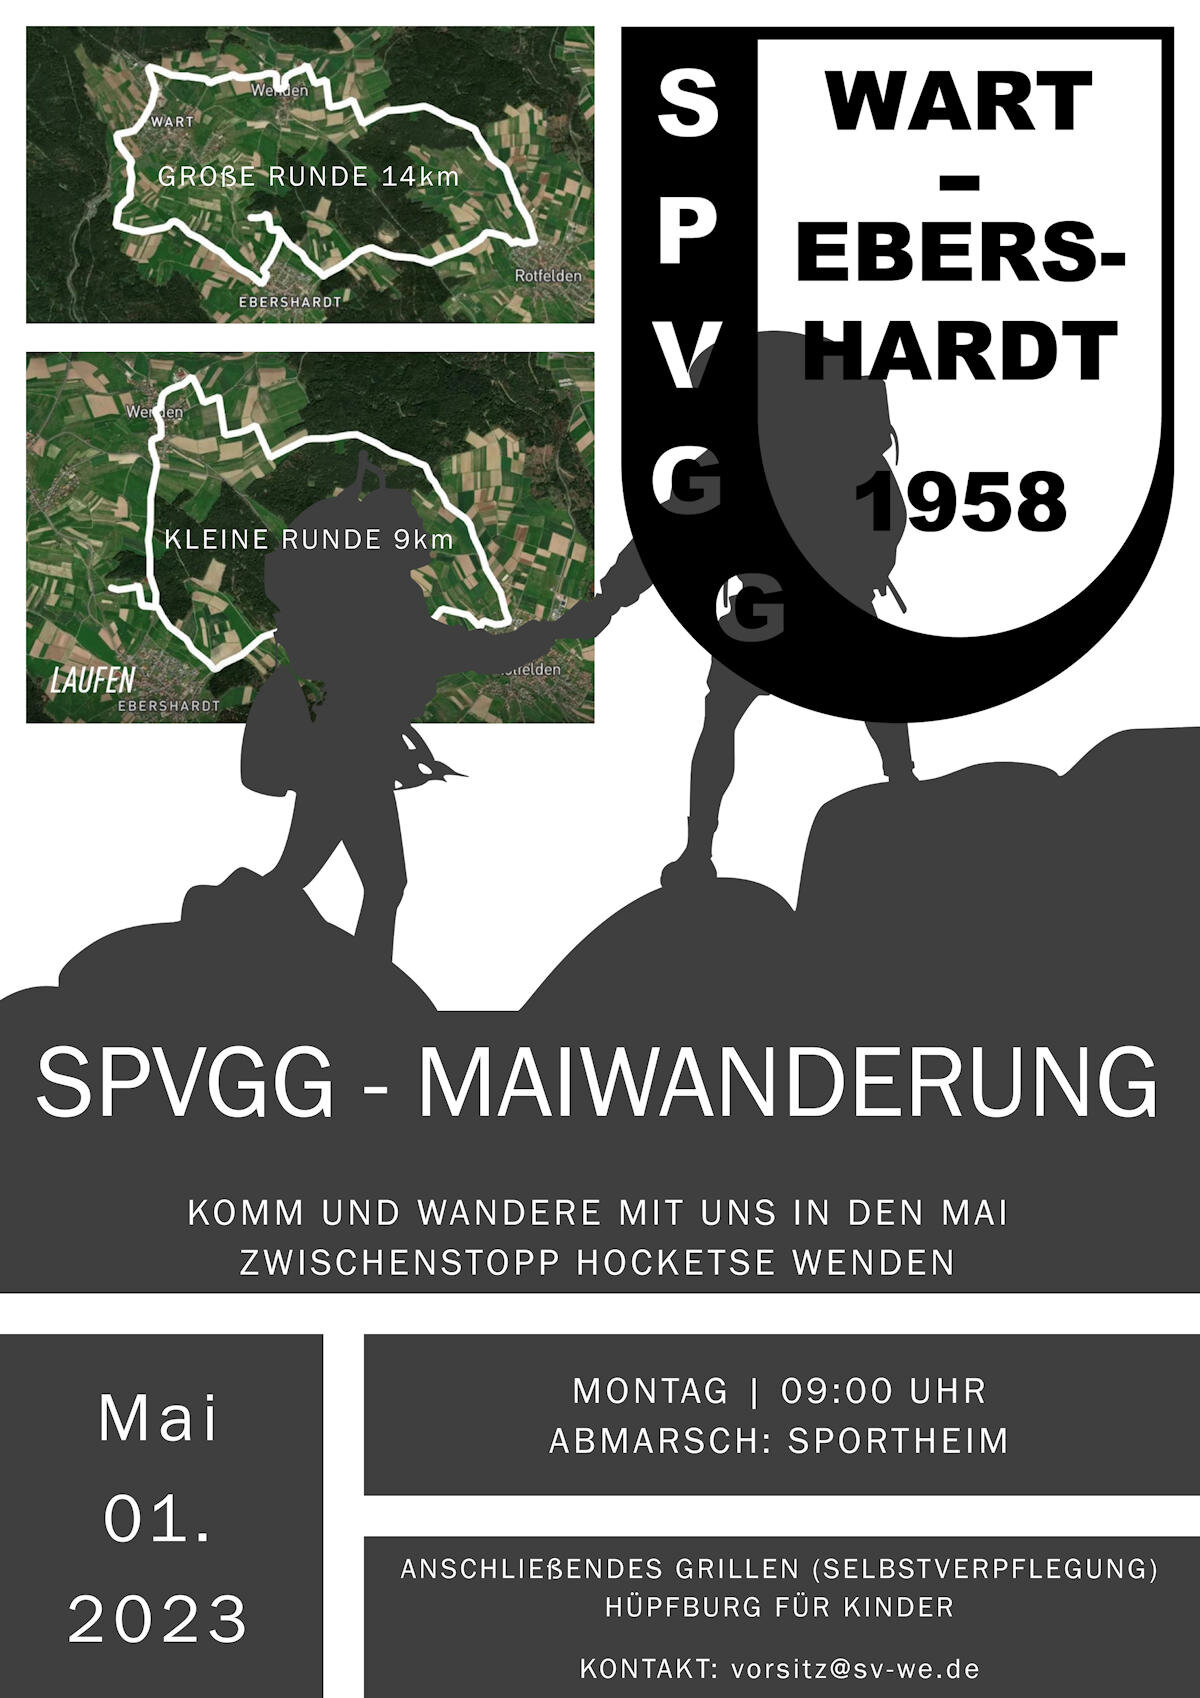 Maiwanderung SpVgg Wart-Ebershardt